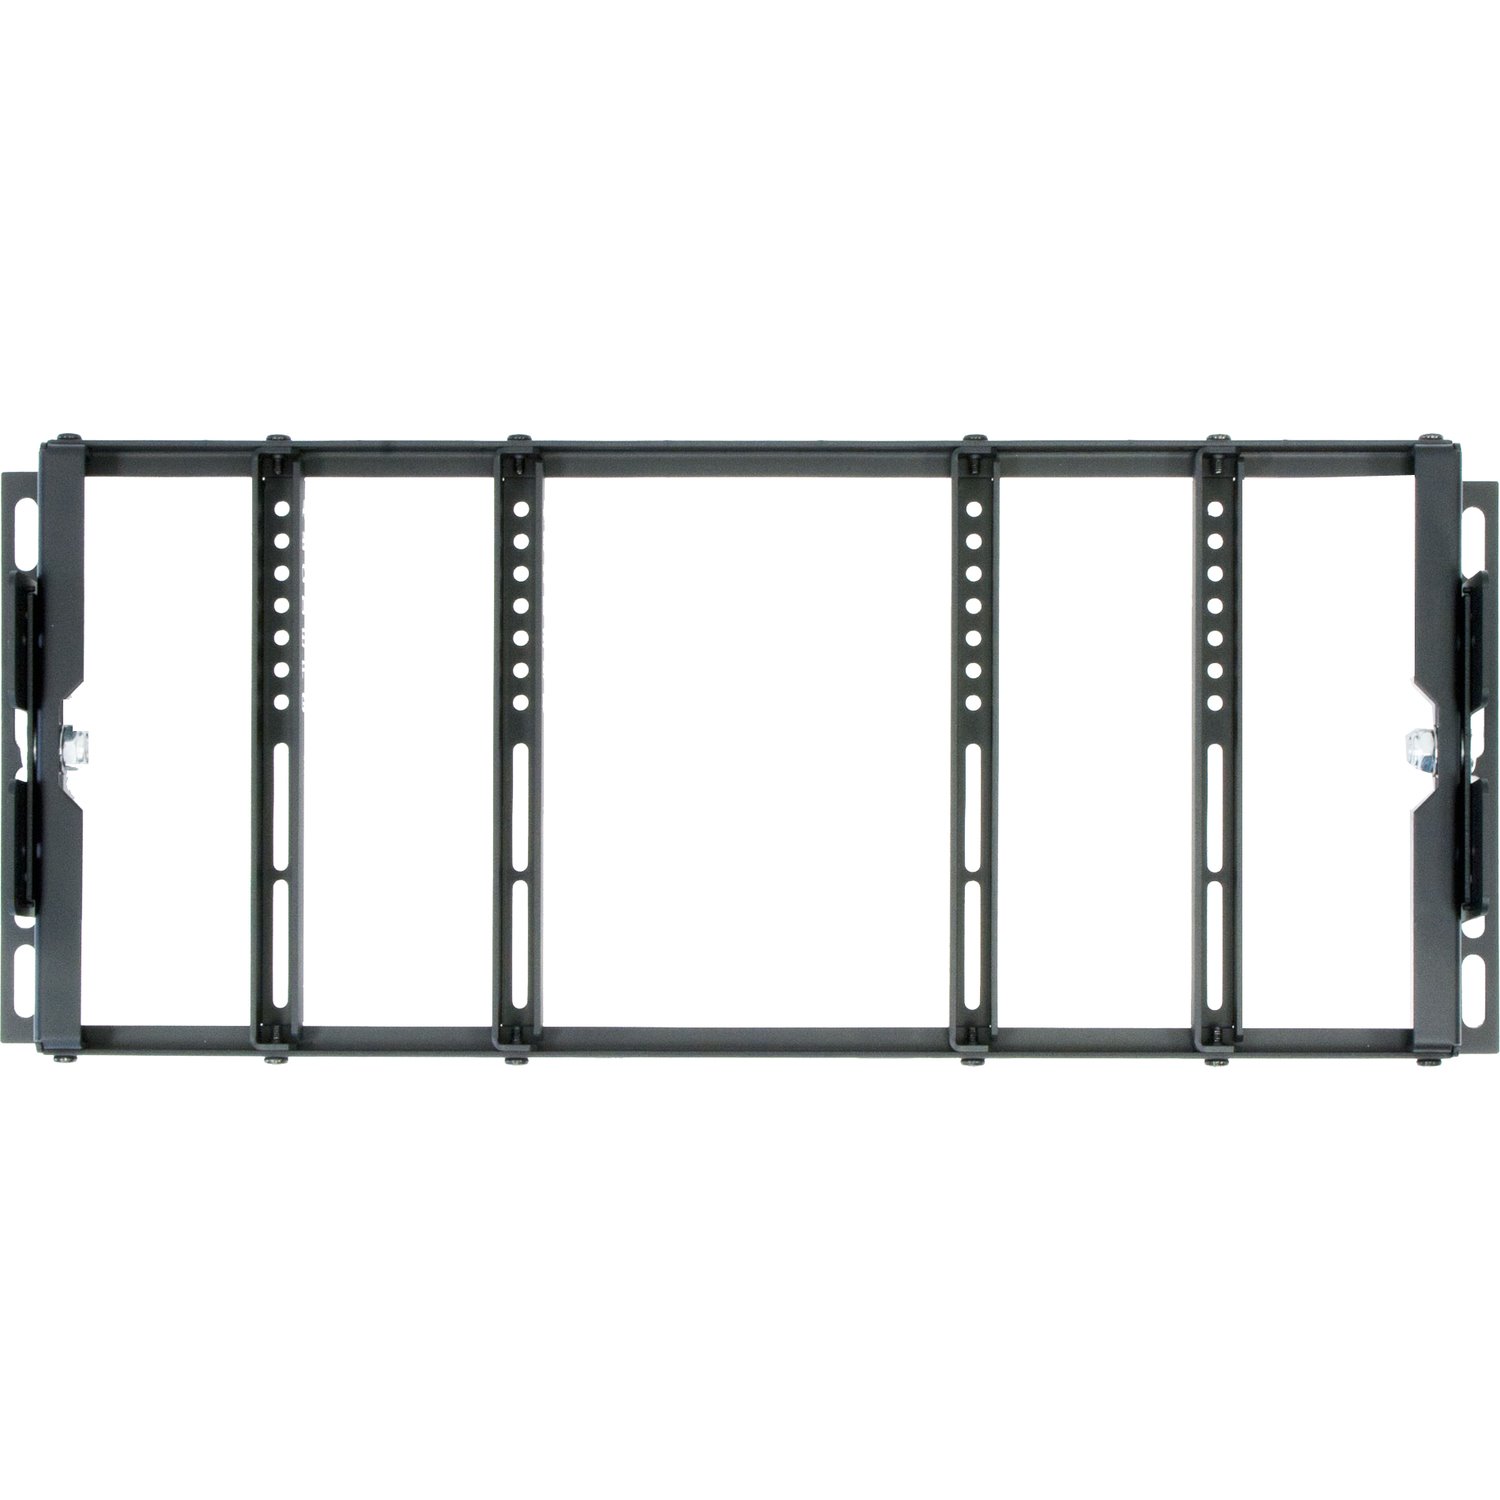 ViewZ VZ-RMK08 Rack Mount for Flat Panel Display - Black